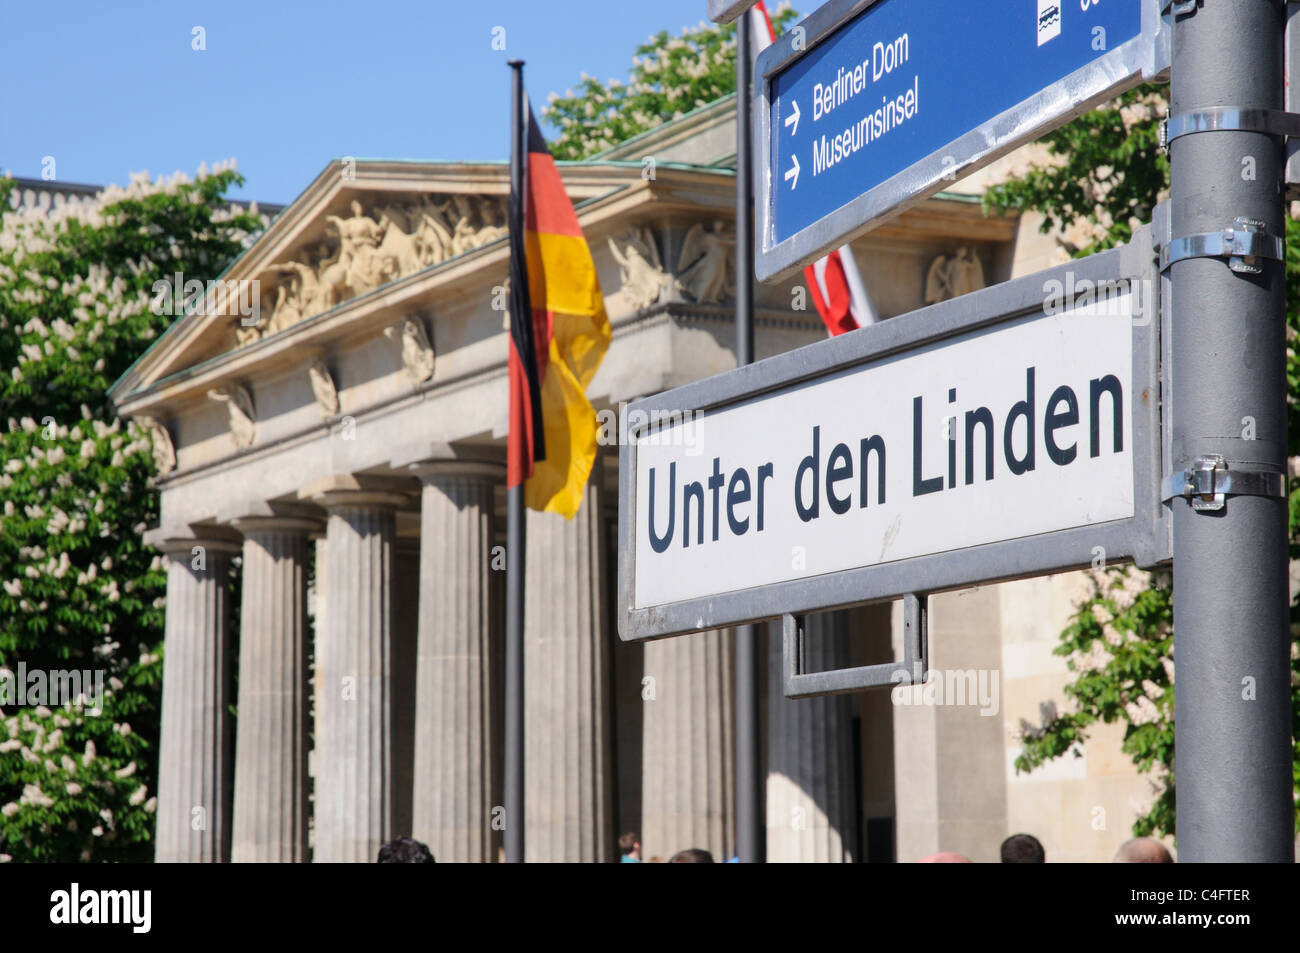 The Neue Wache and Unter den Linden in Berlin Stock Photo